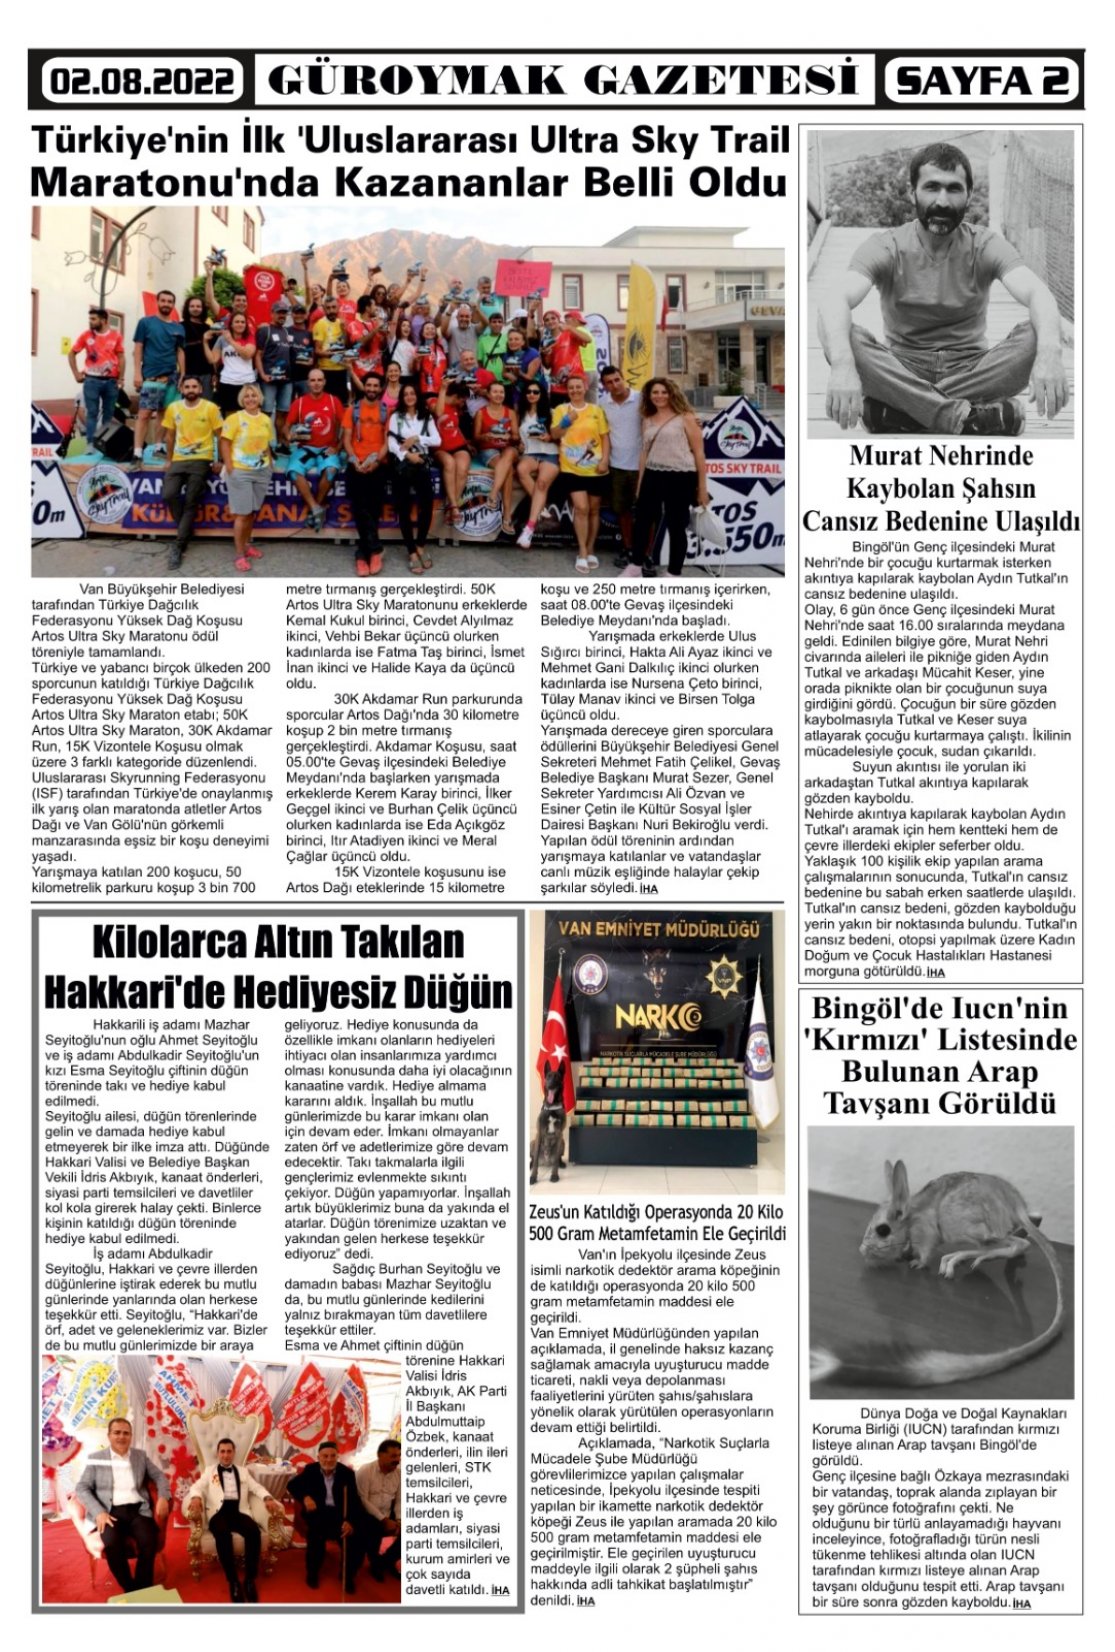 Güroymak Gazetesi  Sayılı Gazete Küpürü